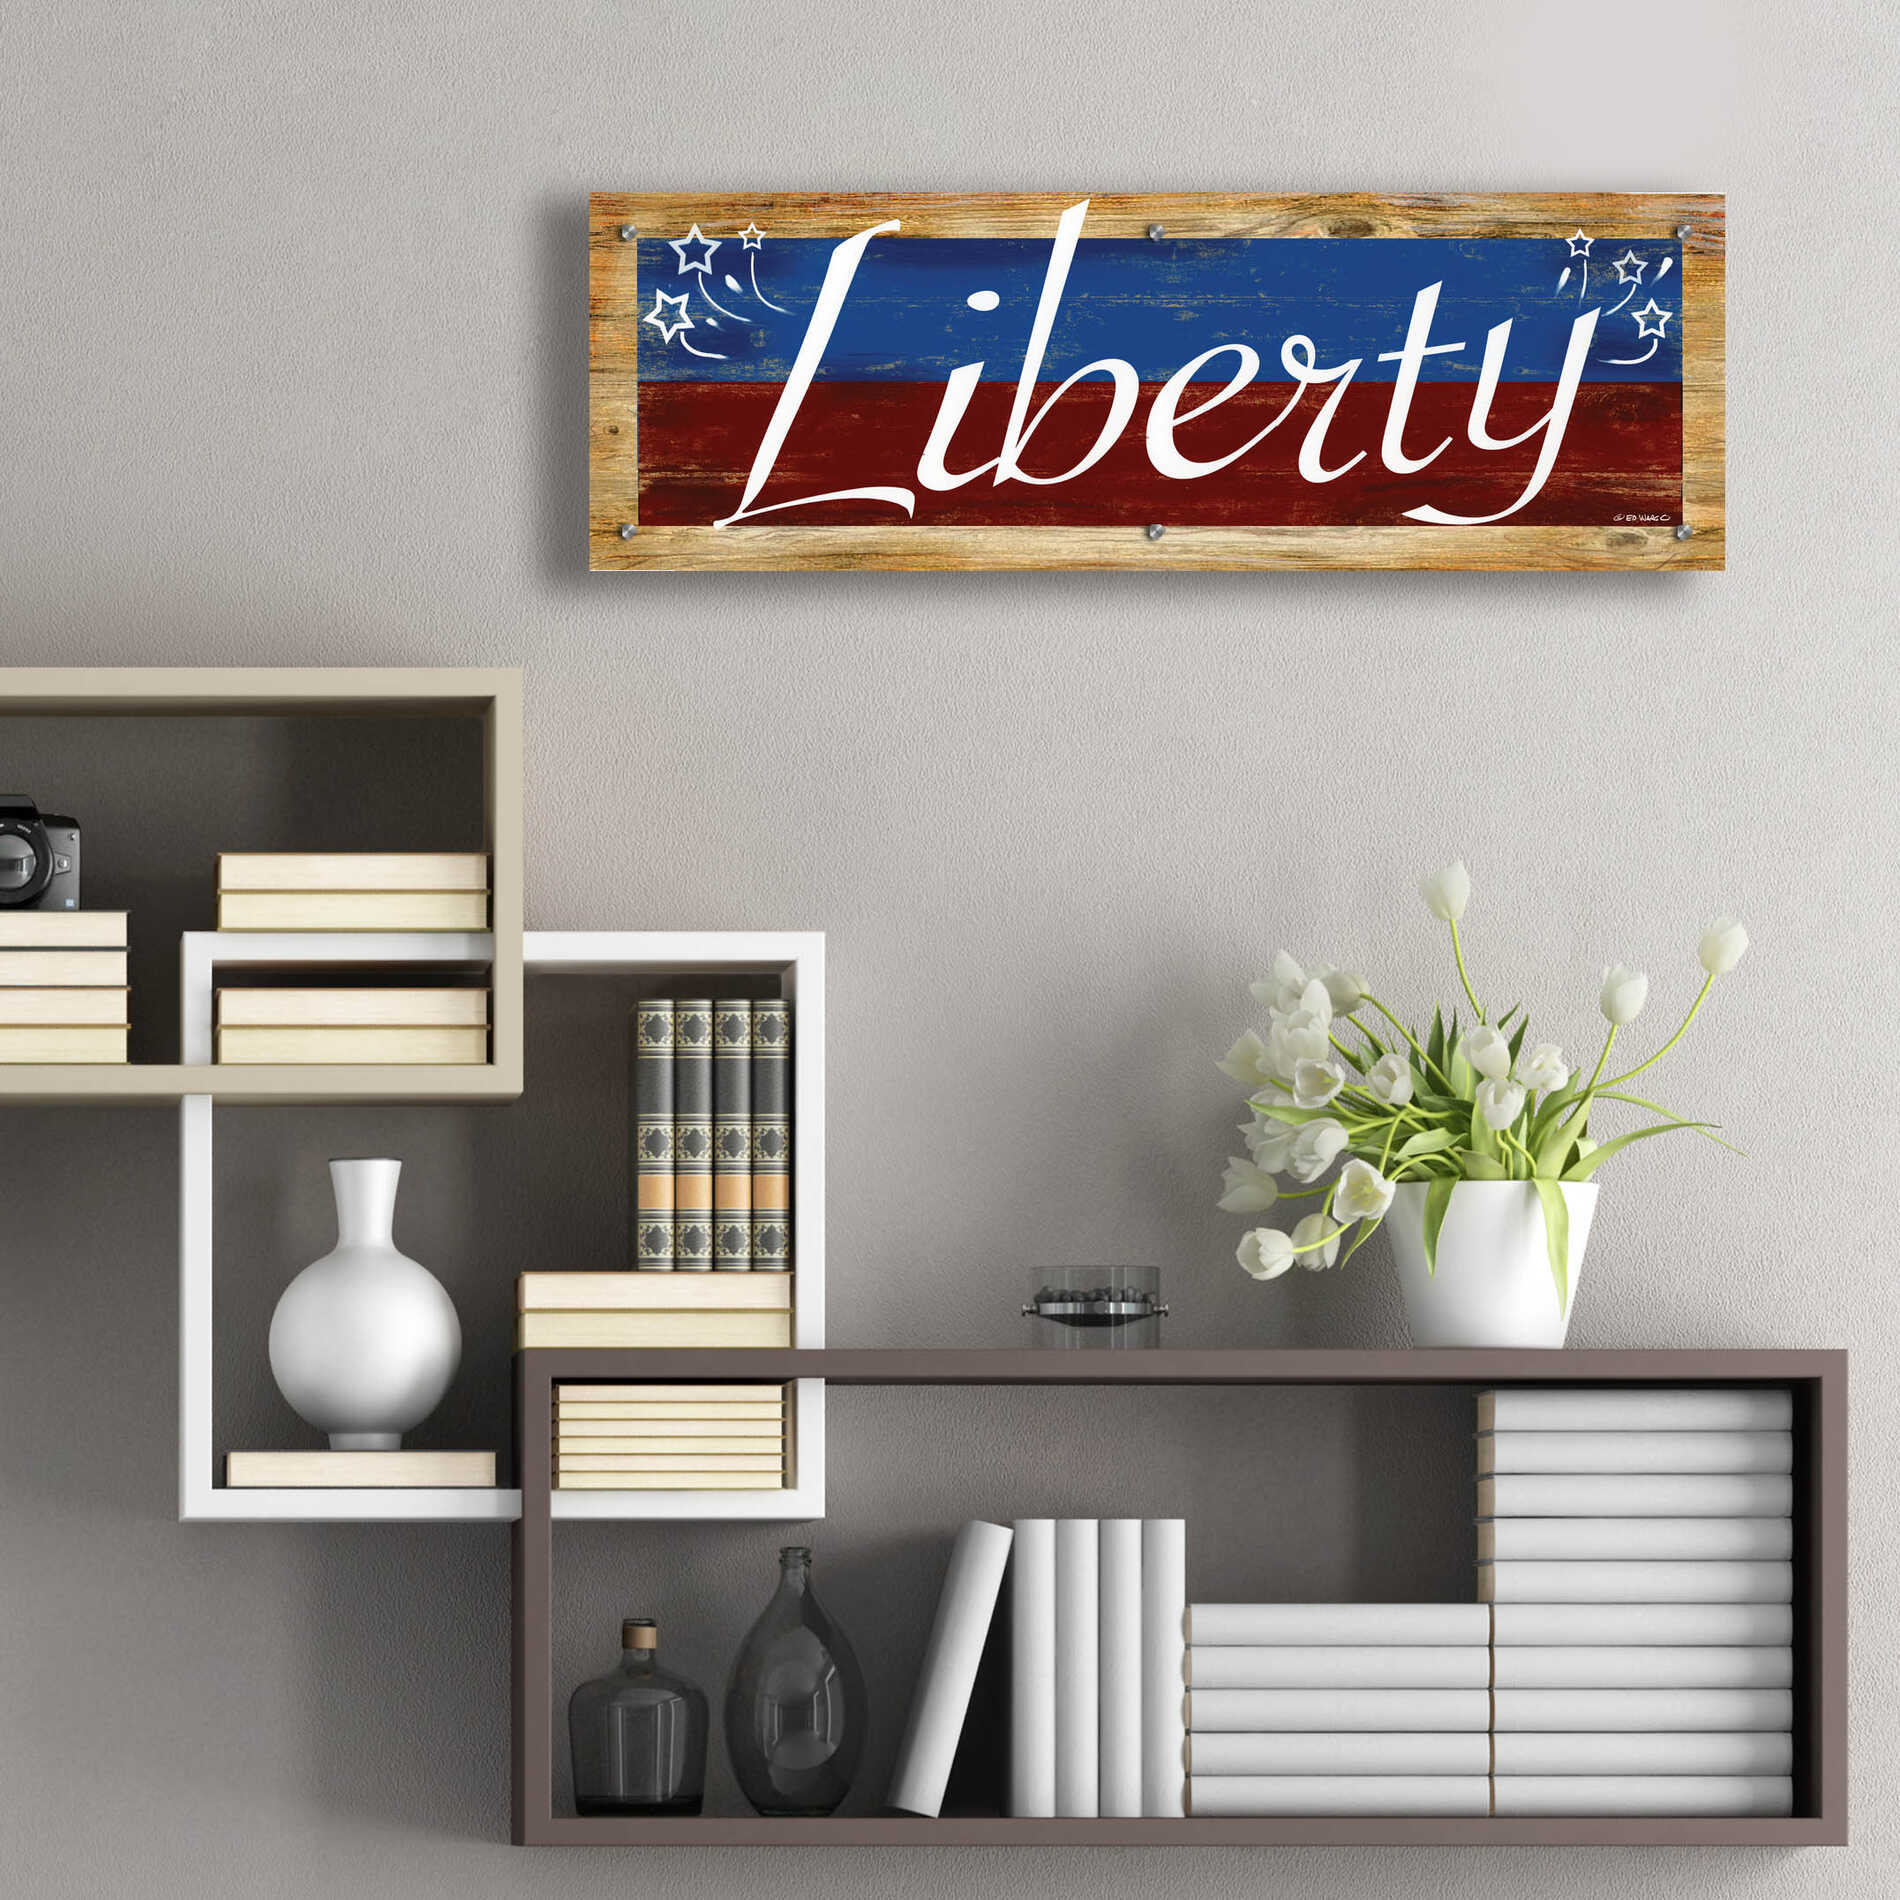 Epic Art 'Liberty' by Ed Wargo, Acrylic Glass Wall Art,36x12